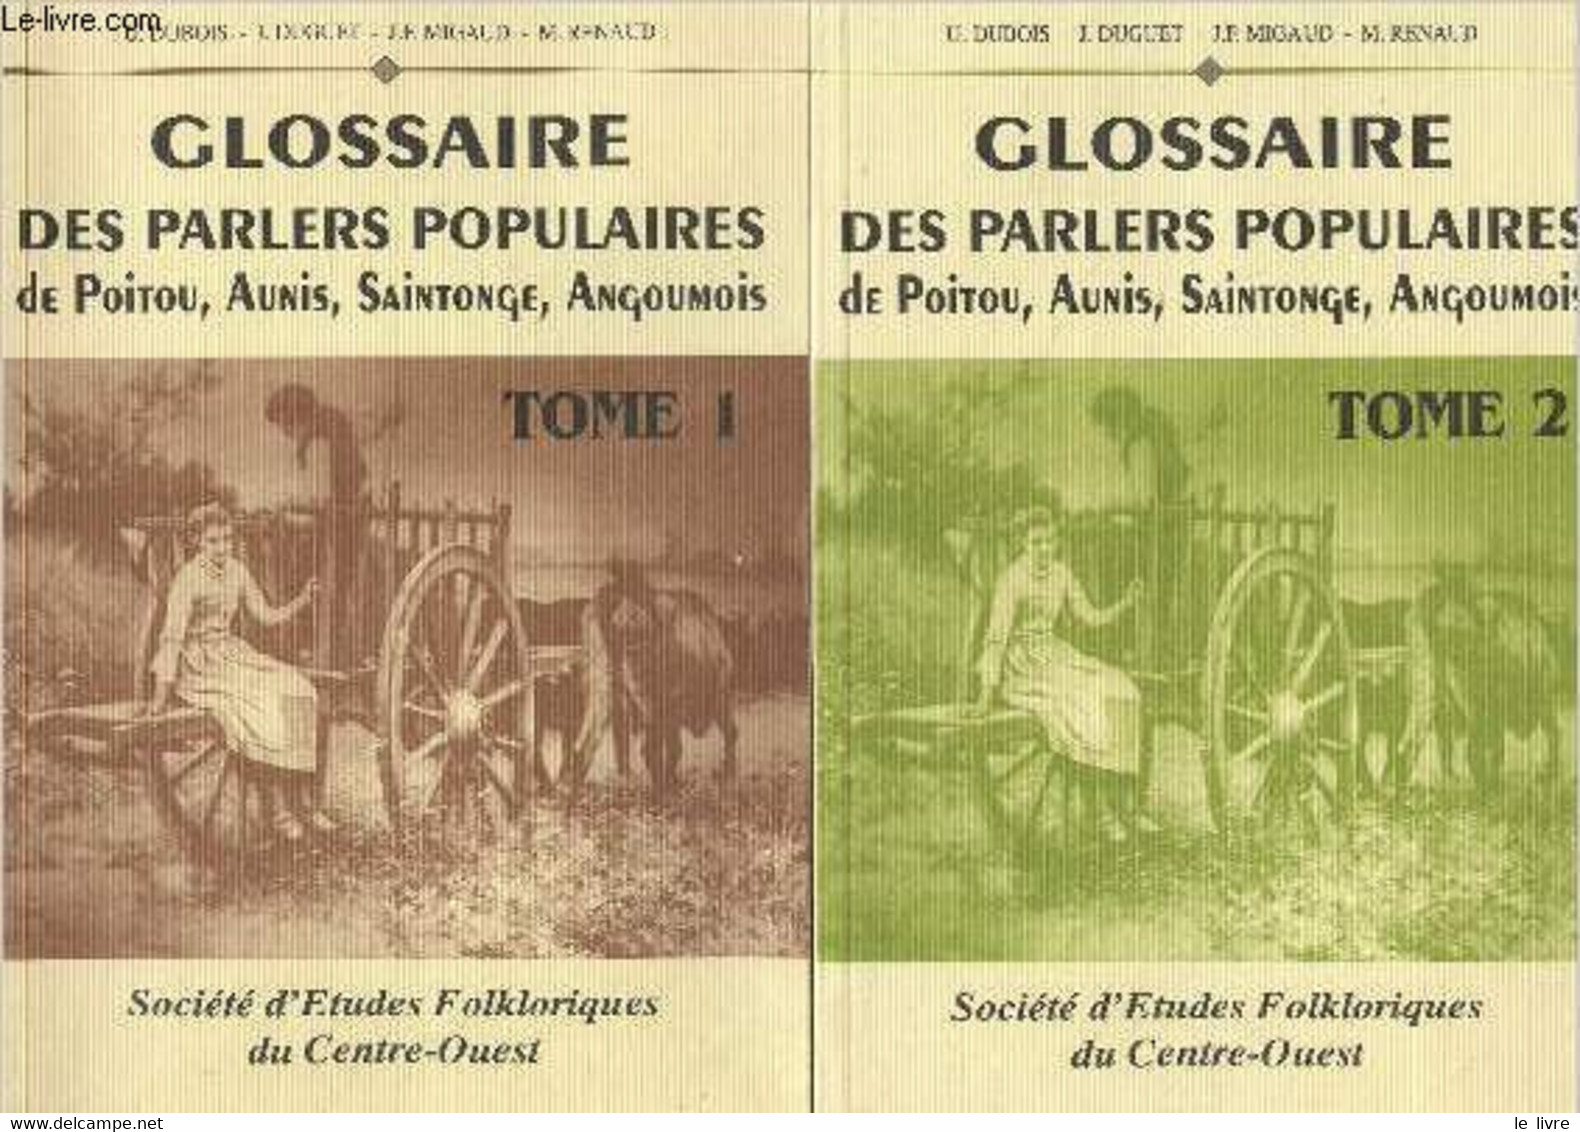 Glossaire Des Parlers Populaires De Poitou, Aunis, Saintonge, Angoumois - En 4 Tomes - Dubois U/Duguet J/Migaud J.F/Rena - Poitou-Charentes